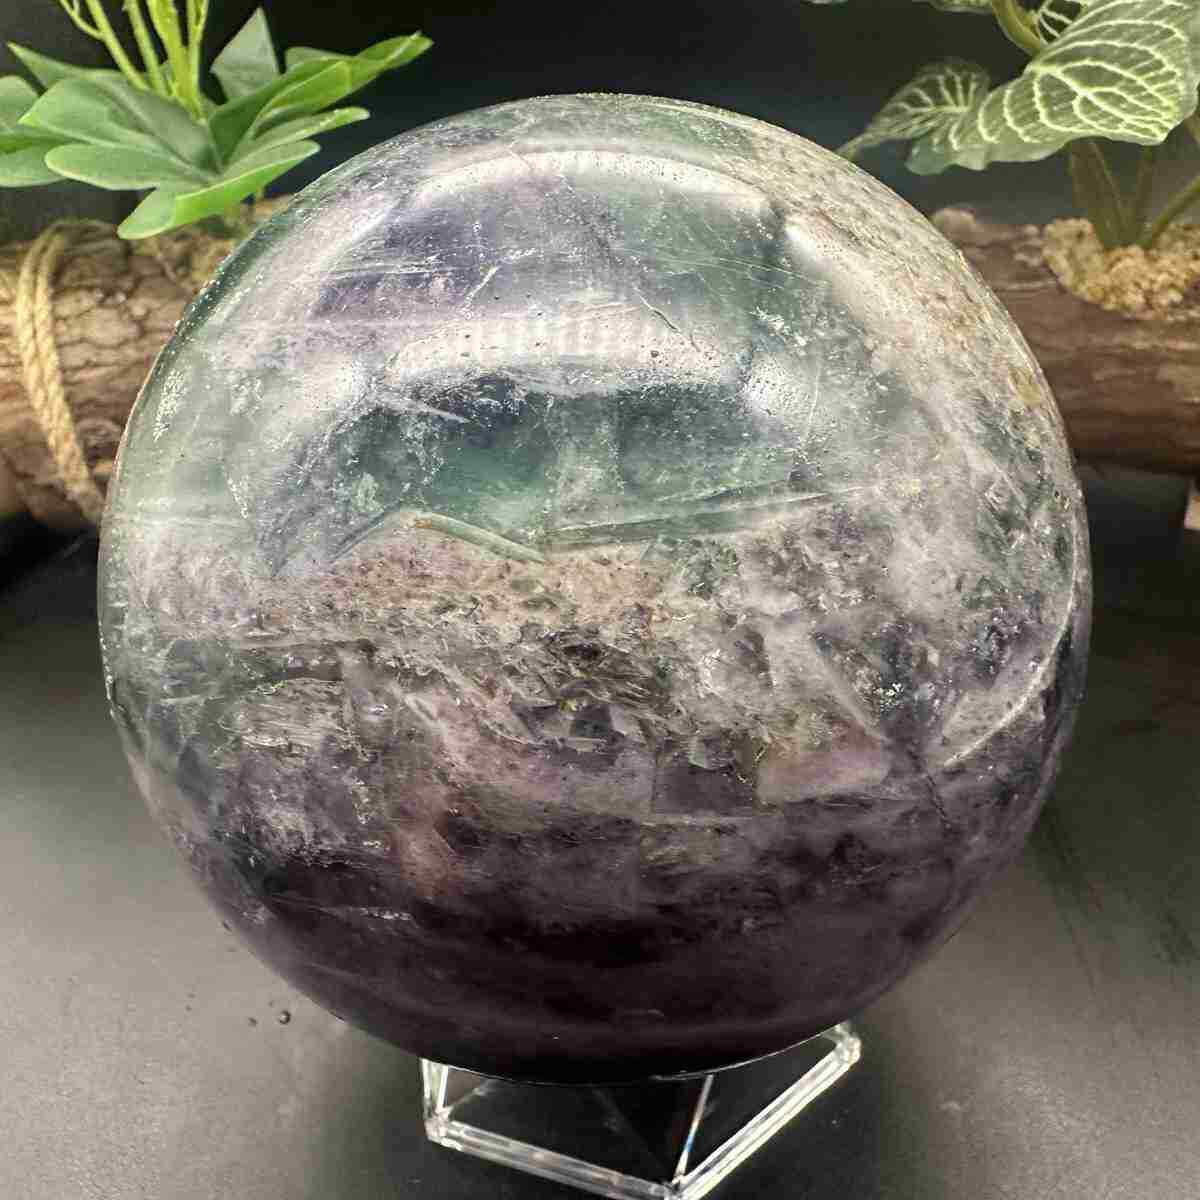  2320g Natural Fluorite Quartz Sphere Crystal Energy Ball Reiki Healing Decor 